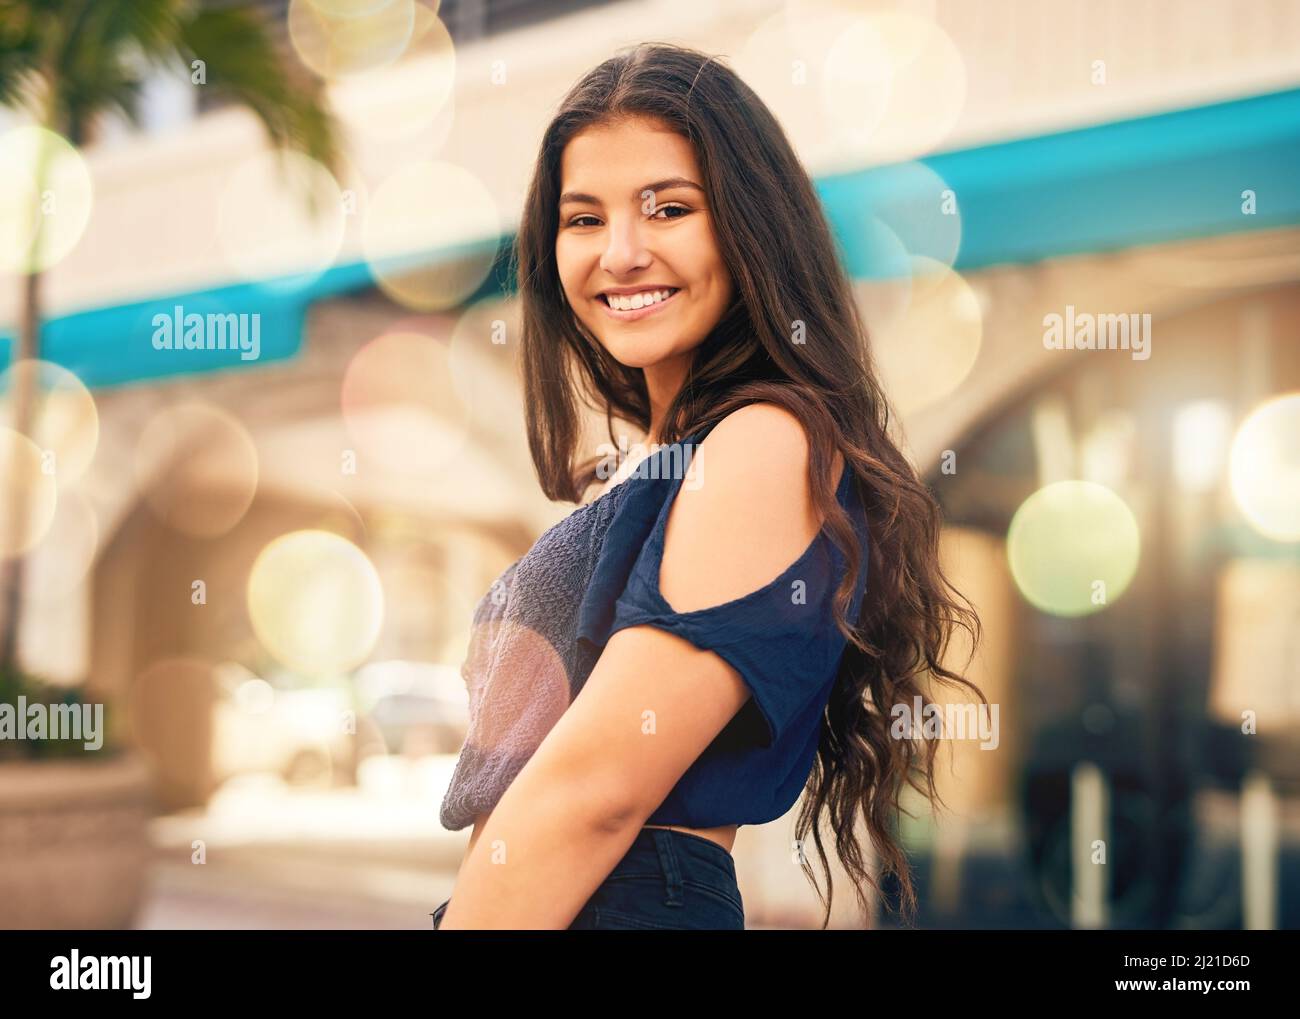 Full Length Portrait Brunette Girl Wearing Black Single Jeans Standing  Stock Photo by ©faestock 210482878